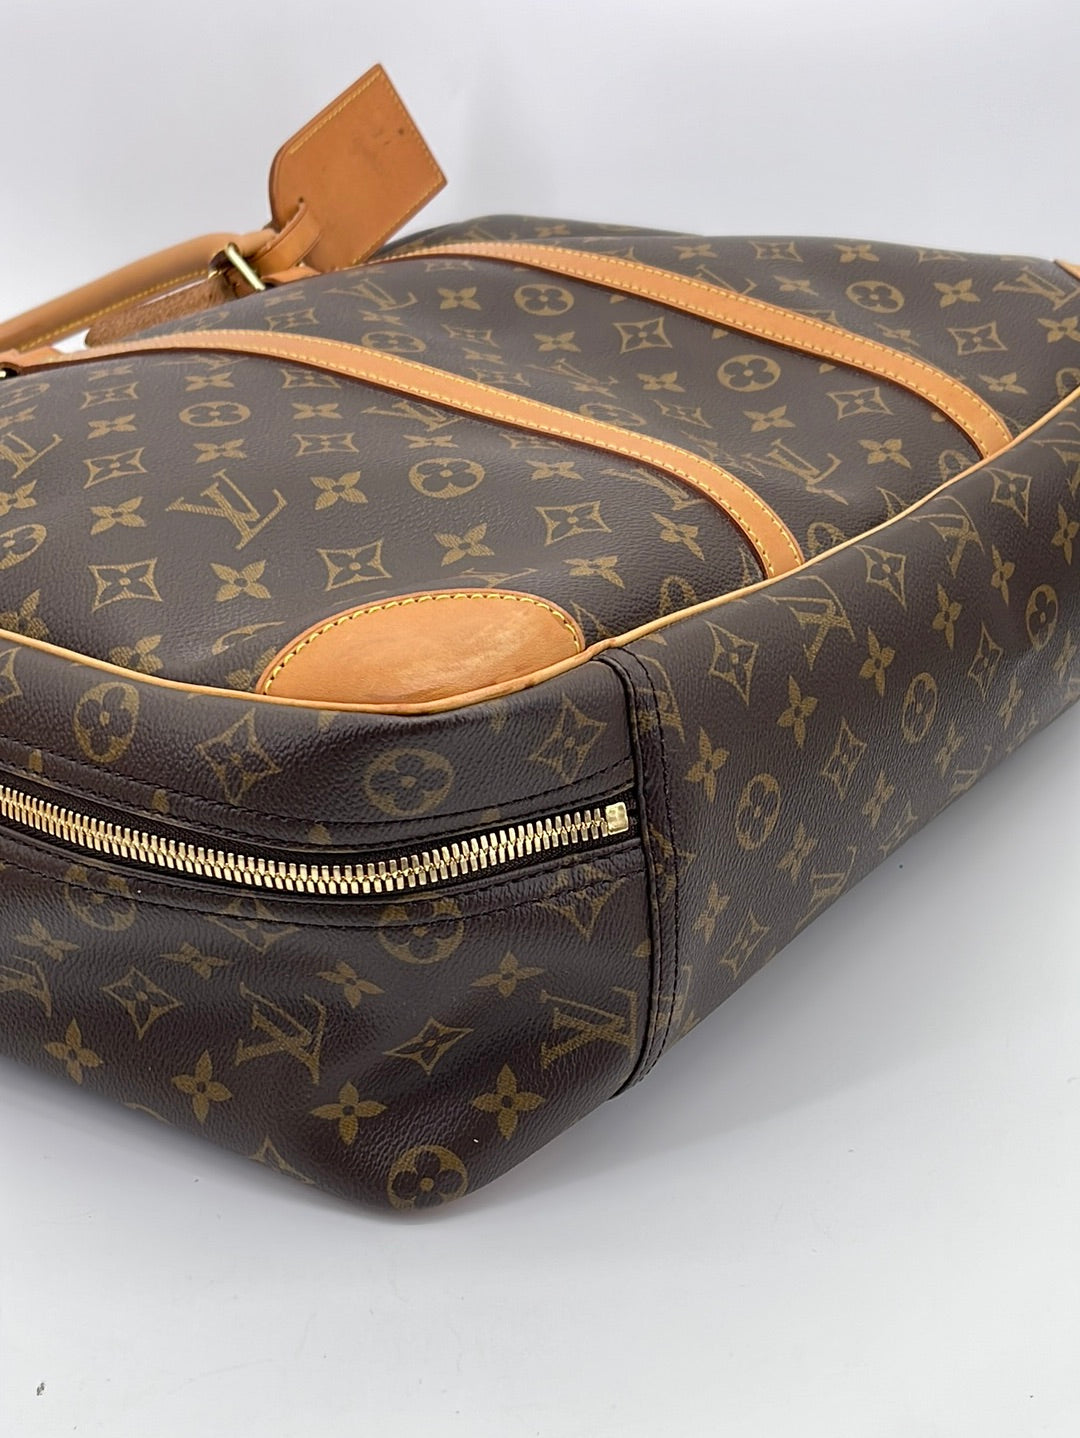 Shop authentic Louis Vuitton Monogram Pégase Légère 45 Travel Bag at  revogue for just USD 1,700.00